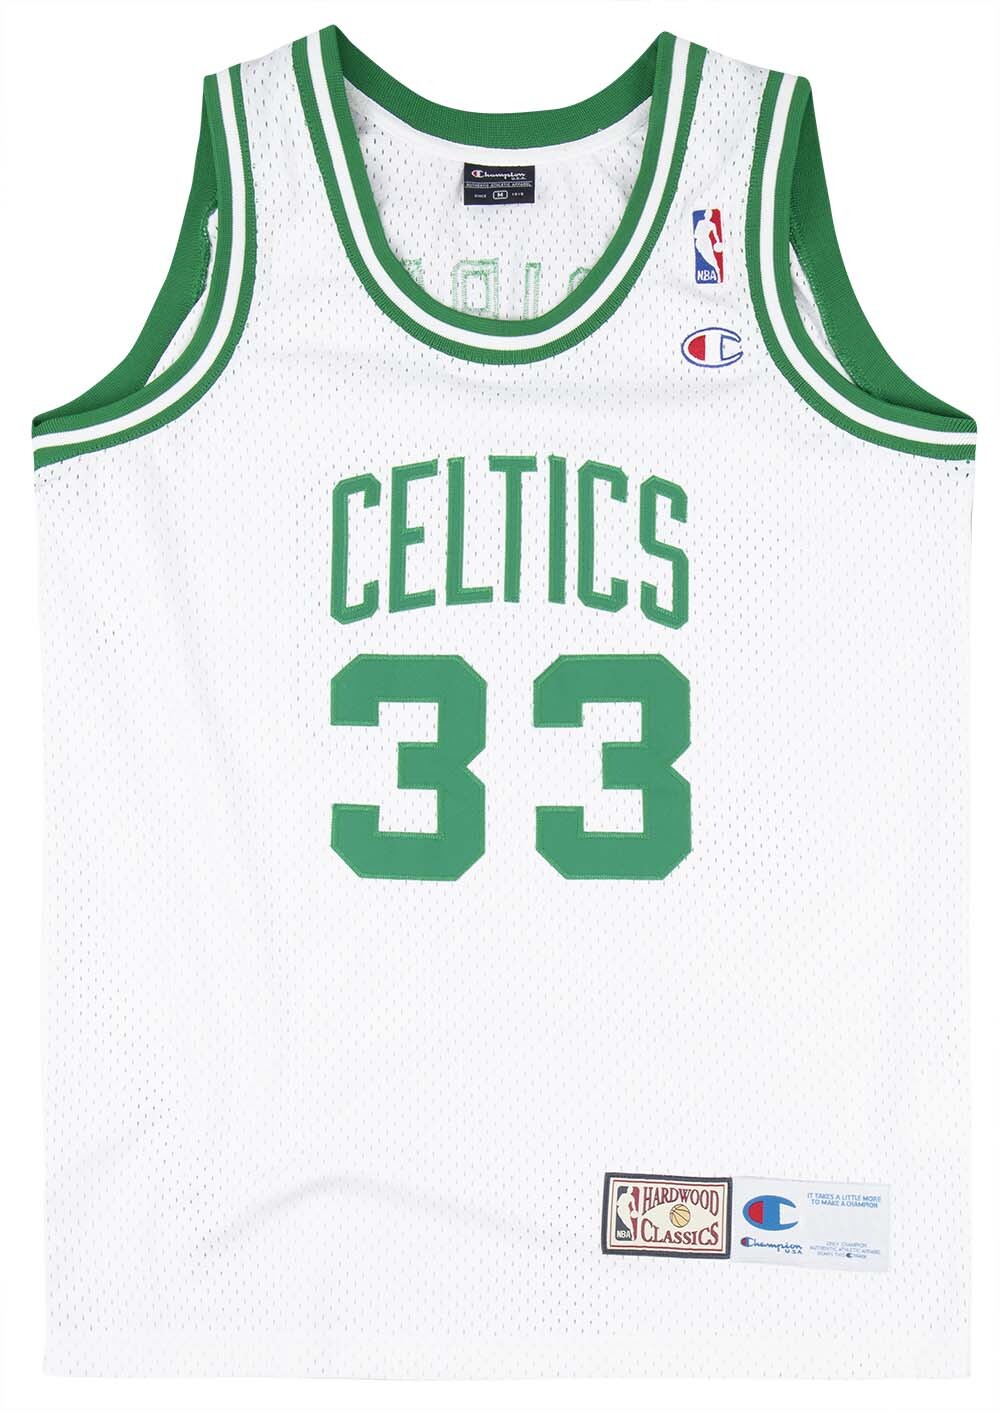 Boston Celtics Home in Boston Celtics Team Shop 